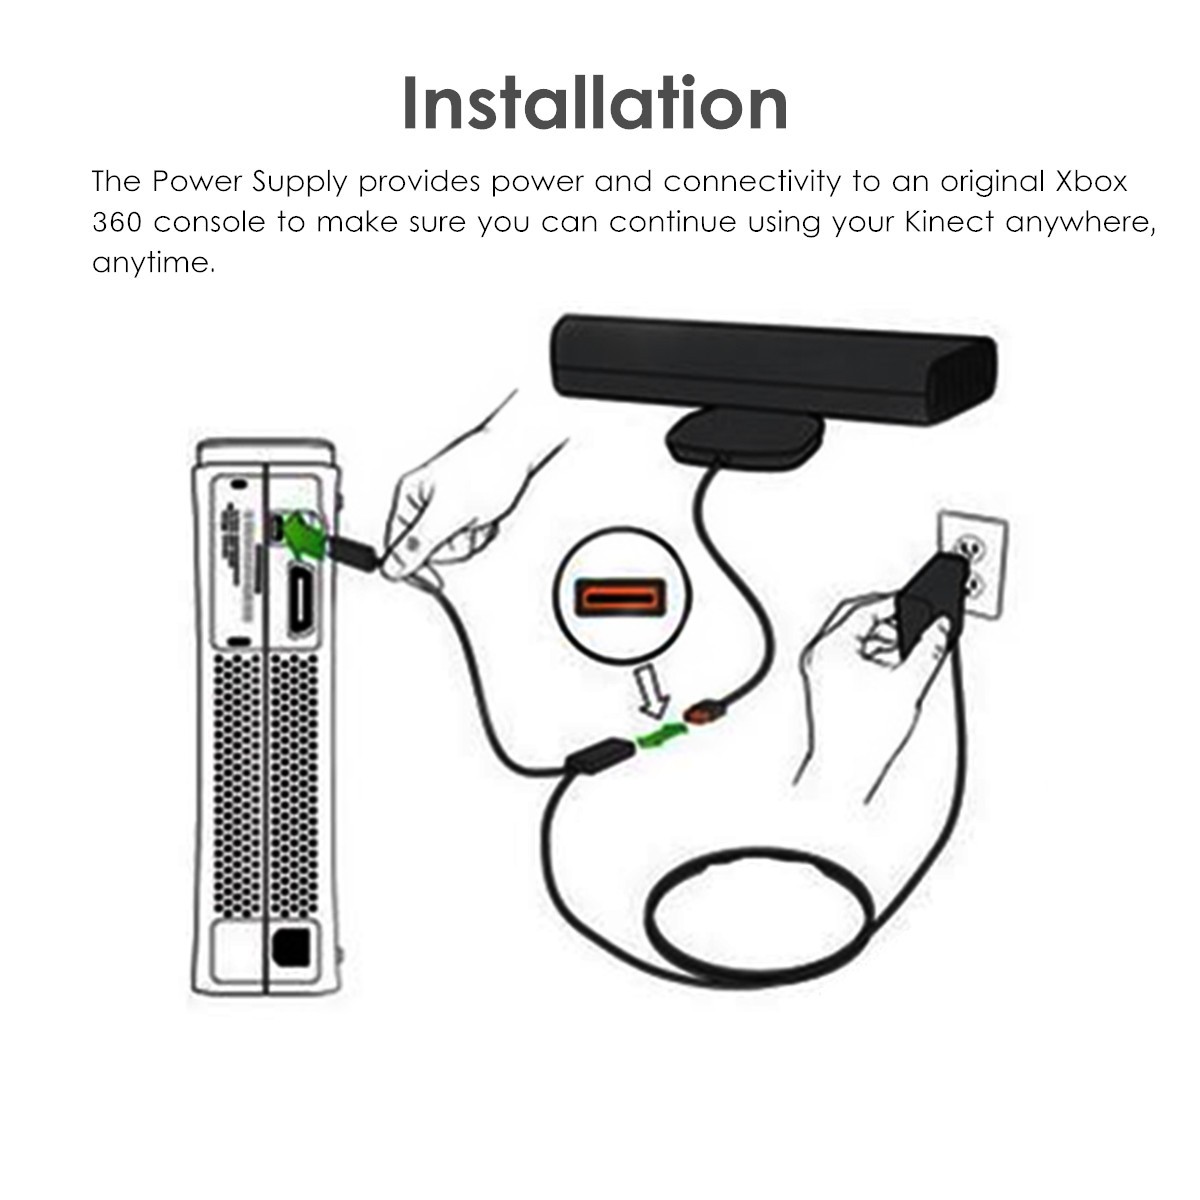 2.3m USB AC Adapter Power Supply Cable for Xbox 360 Kinect Sensor EU/US Plug 19